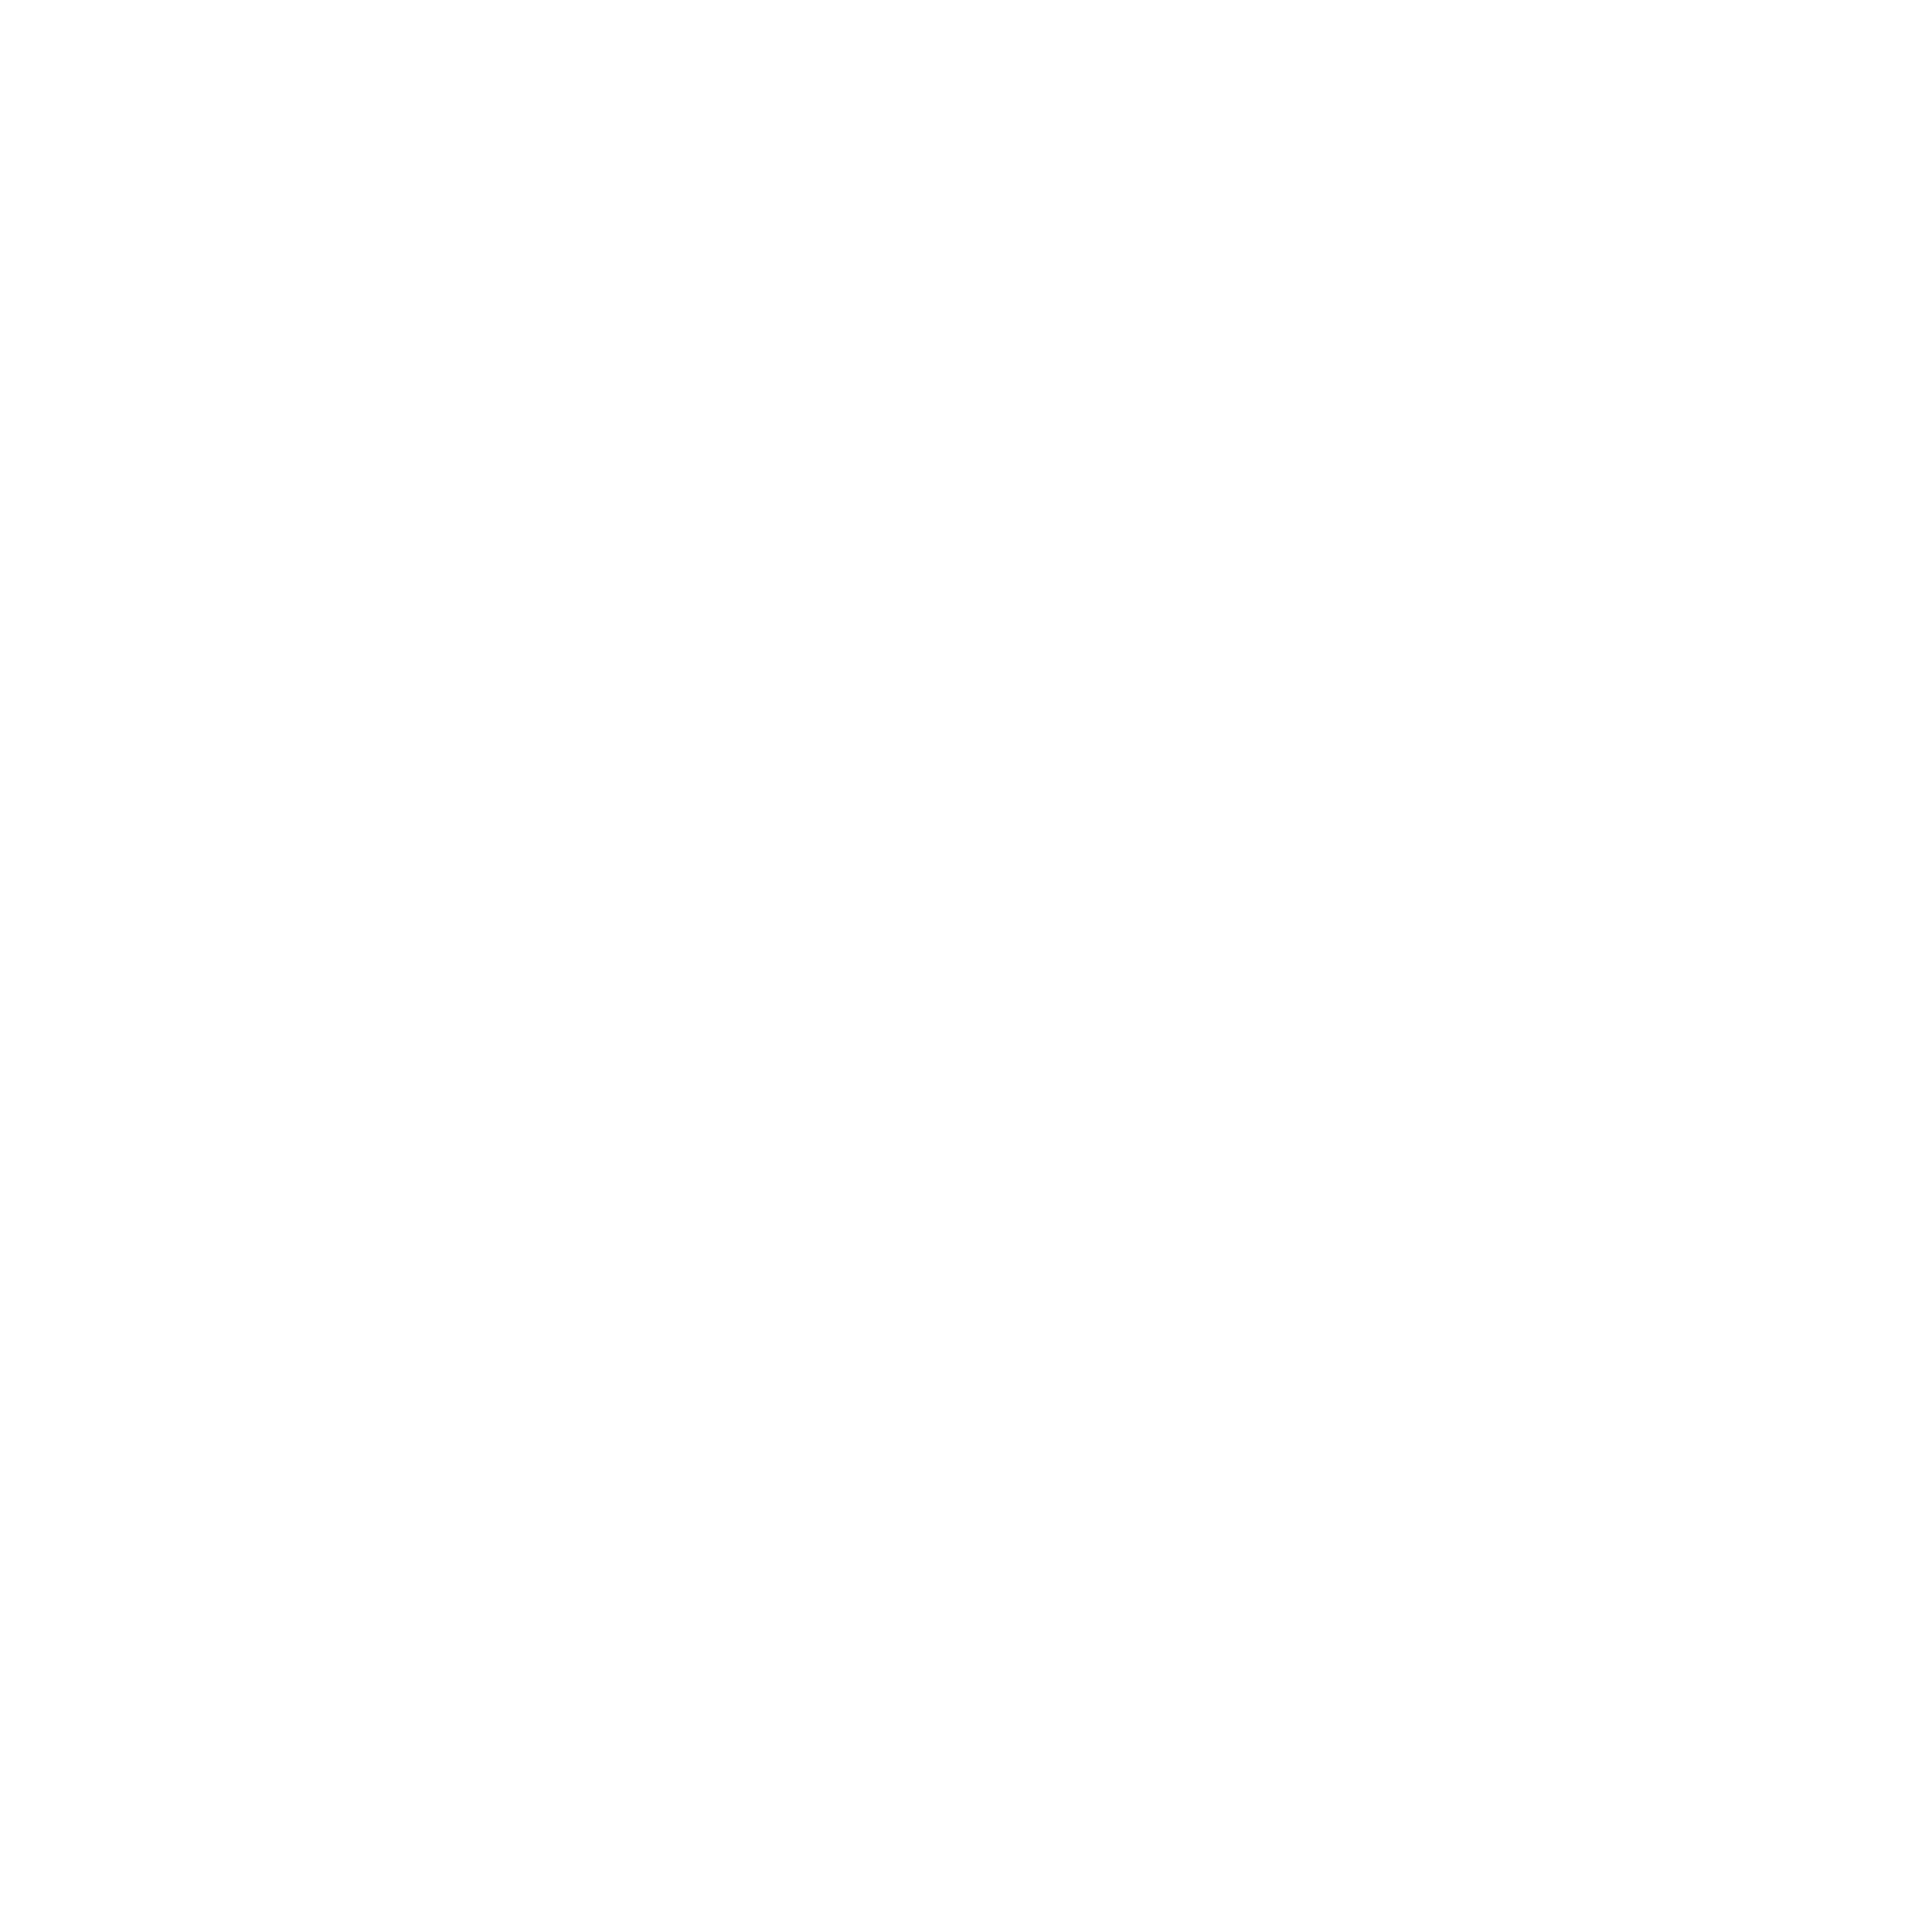 433-4332676_horizontal-color-logo-wordpress-icon-black-and-white